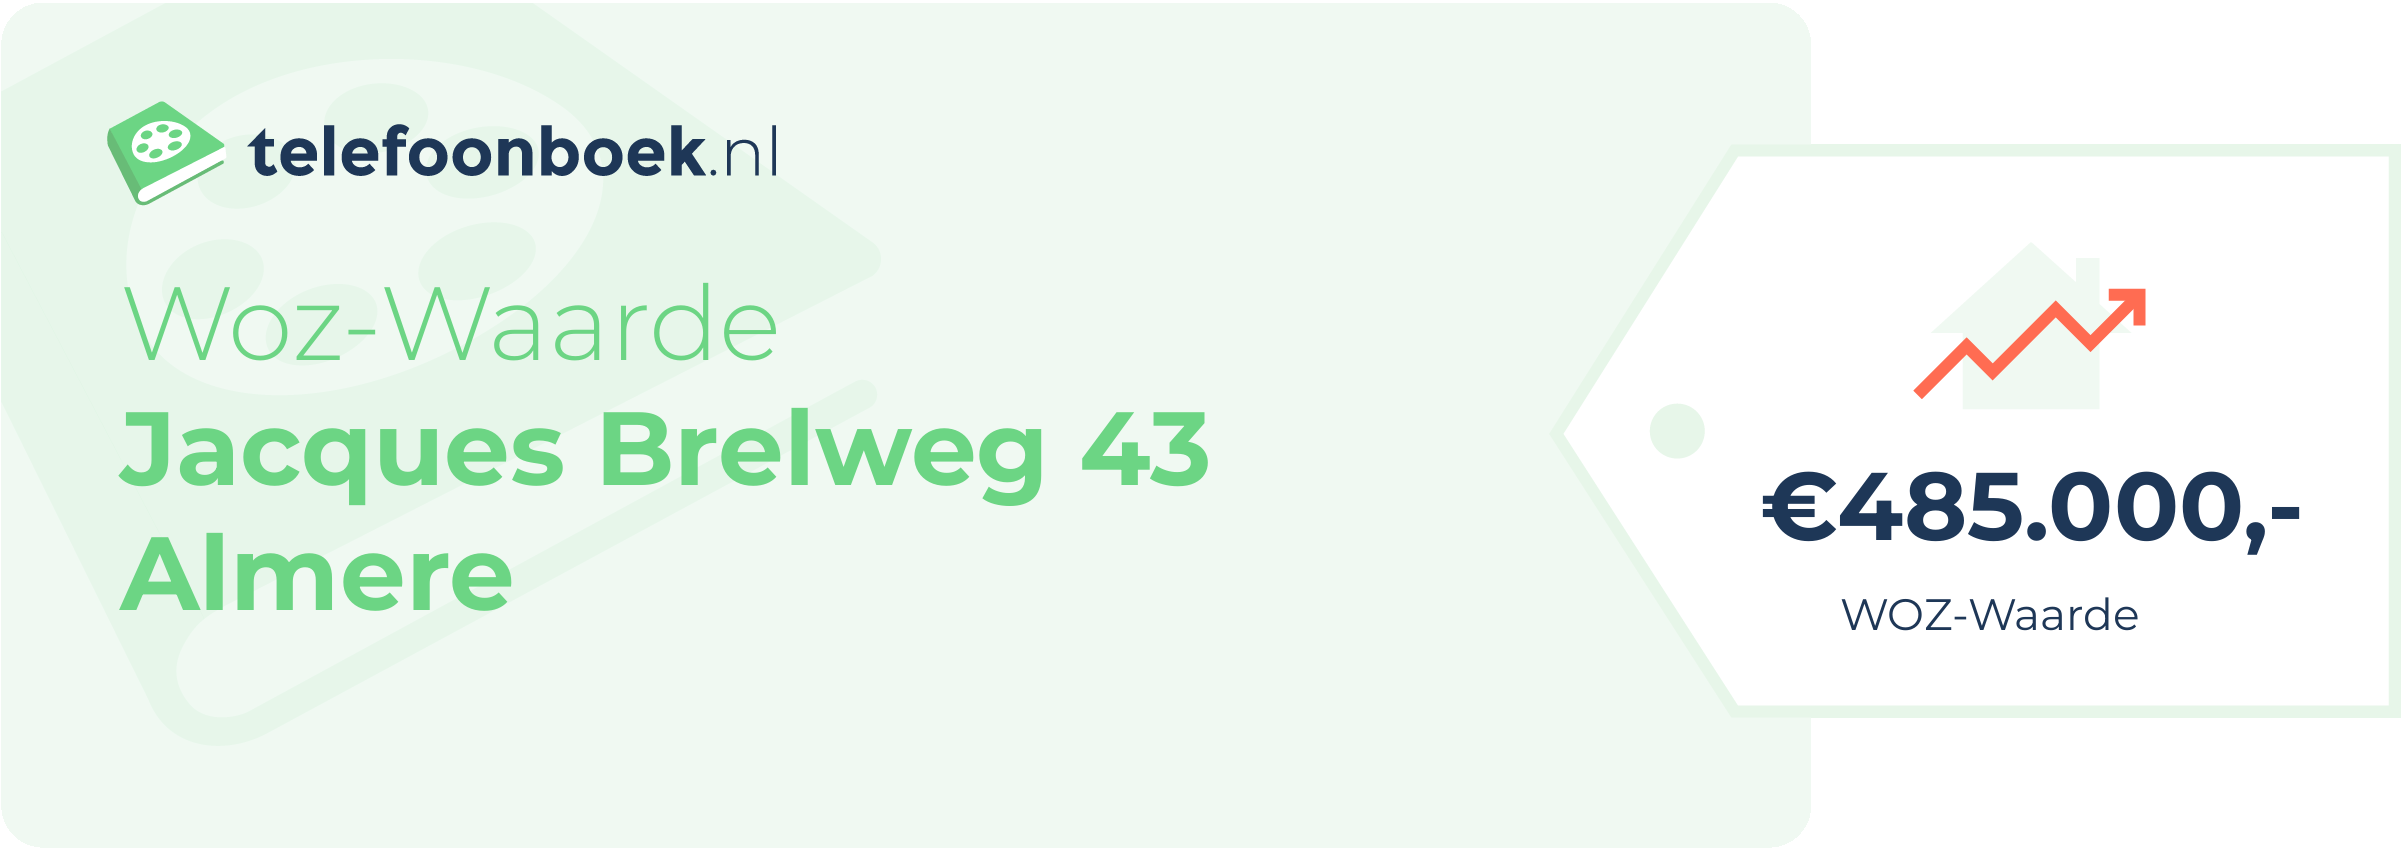 WOZ-waarde Jacques Brelweg 43 Almere